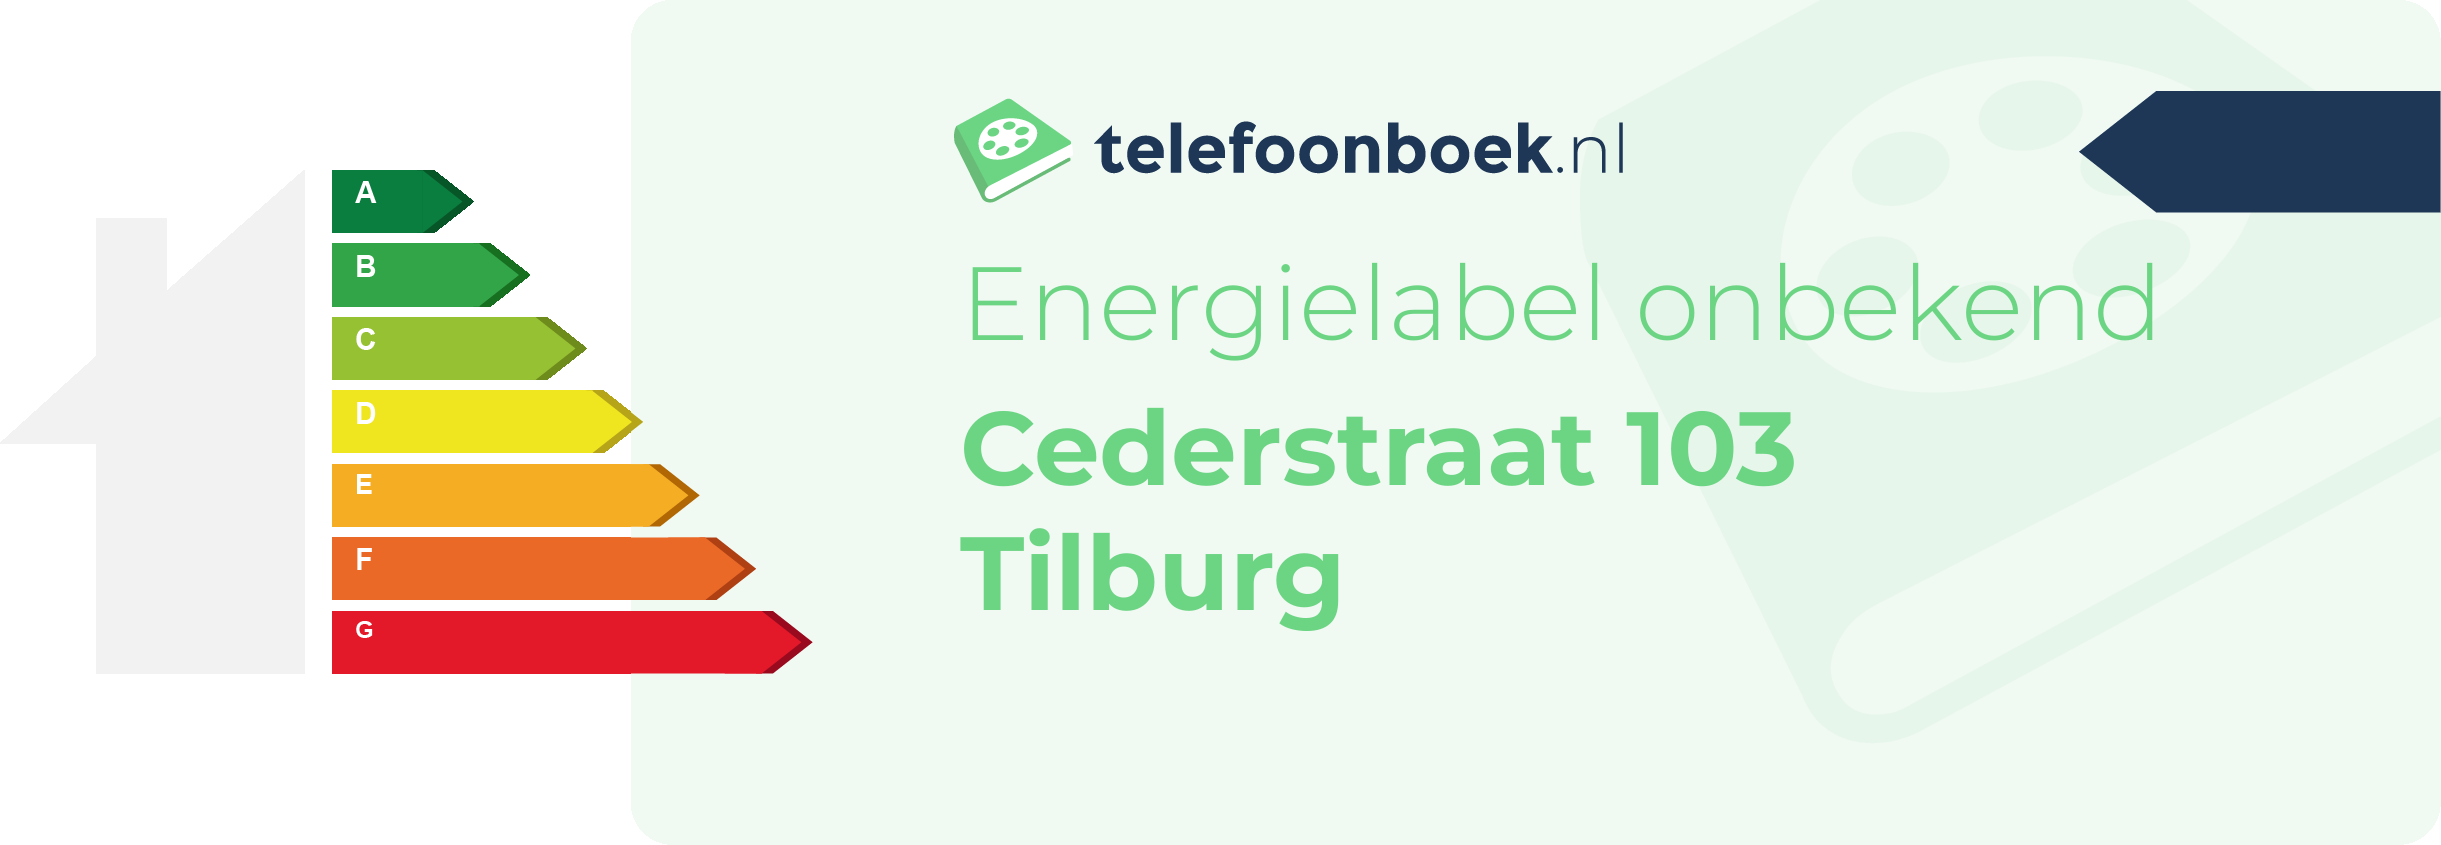 Energielabel Cederstraat 103 Tilburg